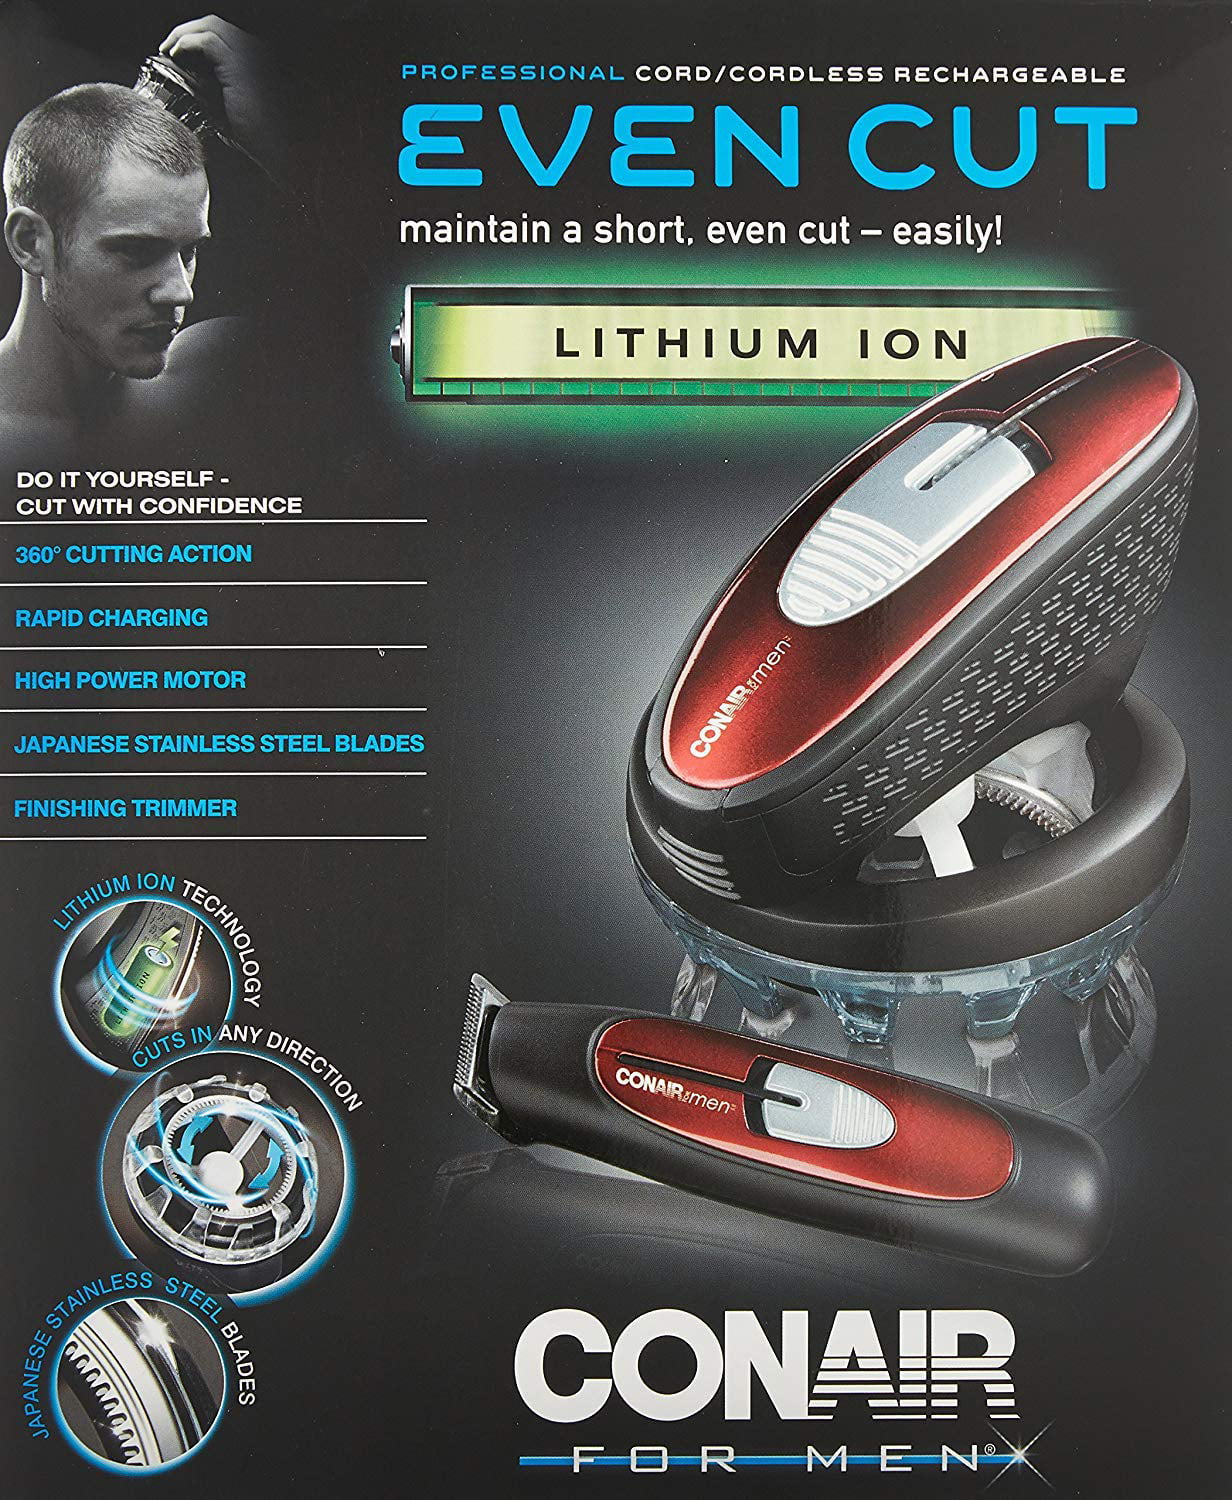 conair lithium ion even cut haircut kit